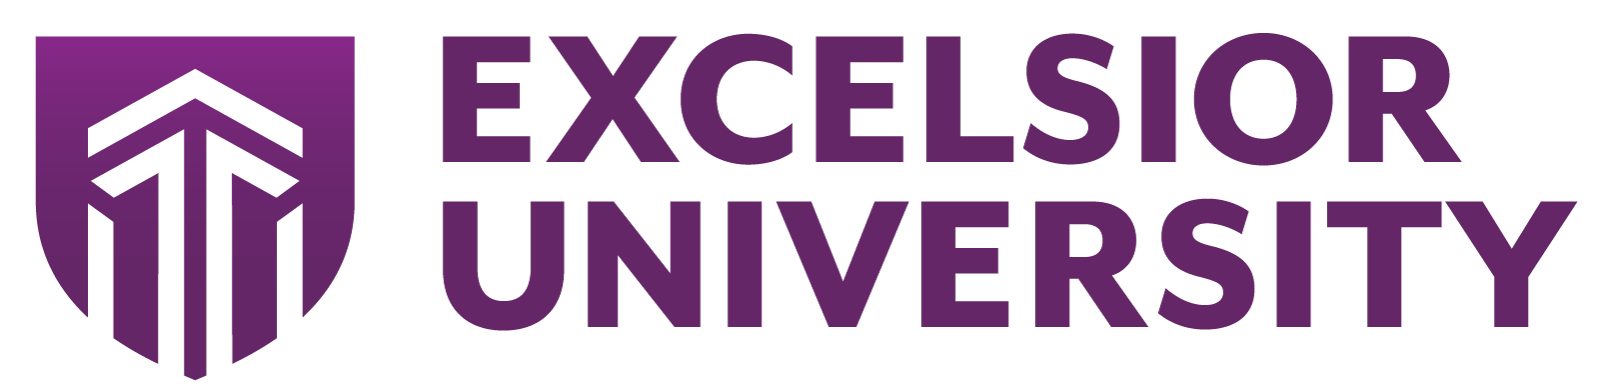 Logotipo de la Universidad de Excelsior en color púrpura